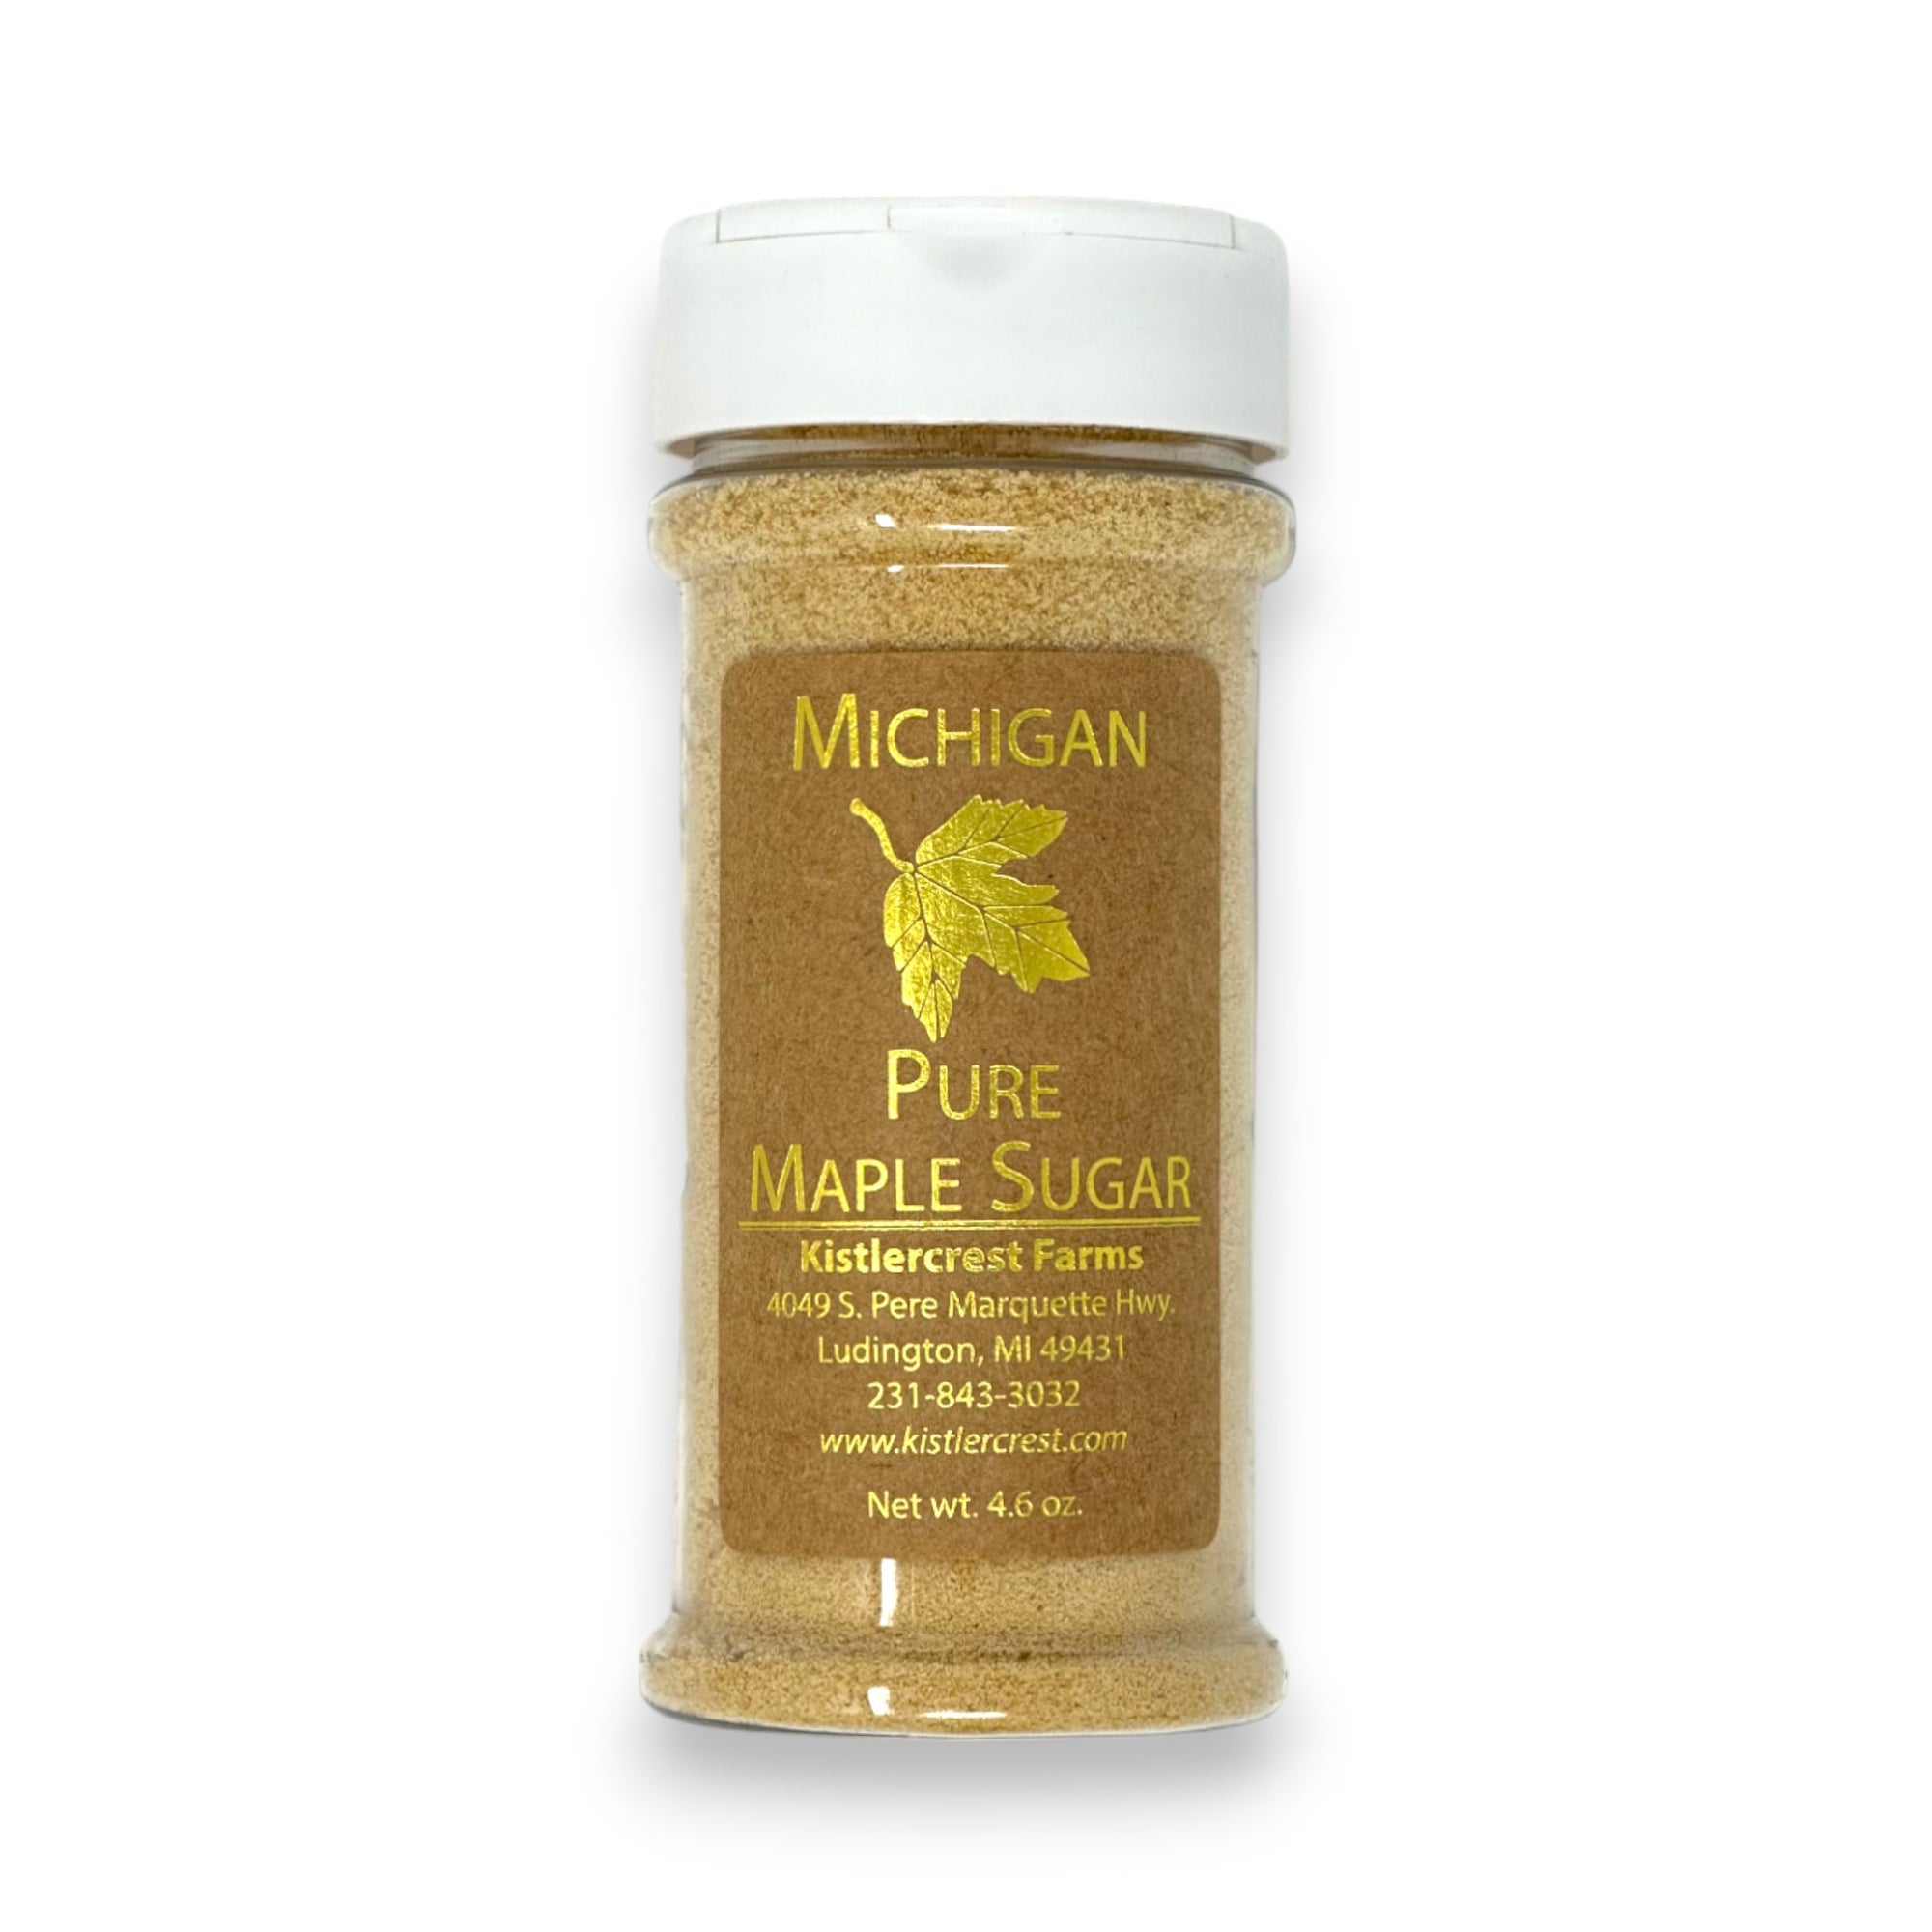 Michigan Pure Maple Sugar.